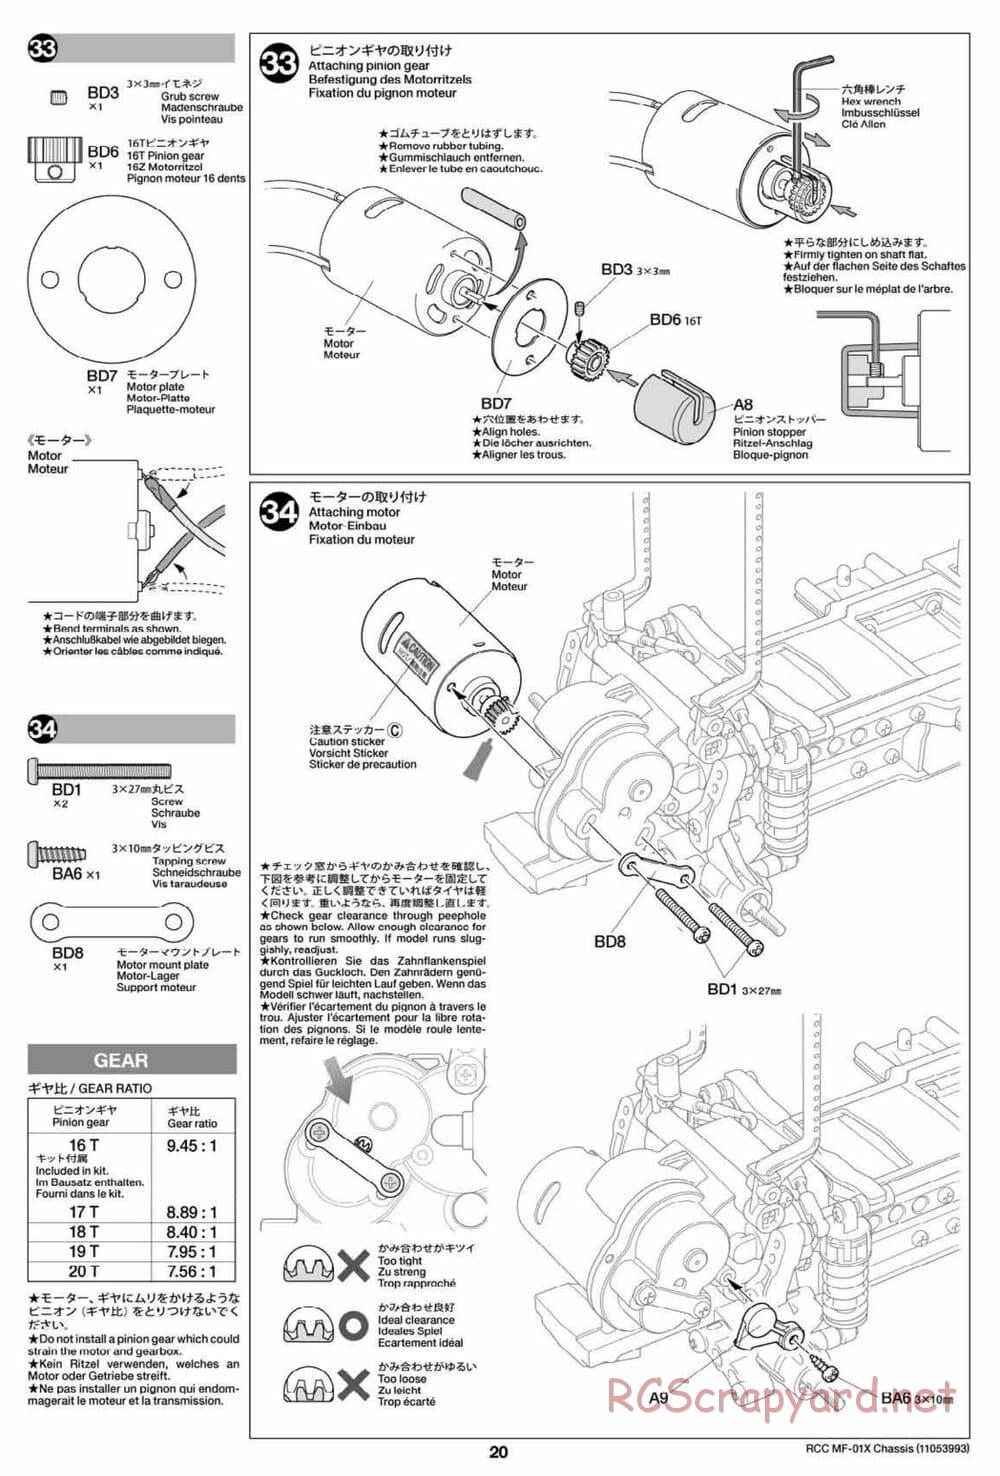 Tamiya - MF-01X Chassis - Manual - Page 20